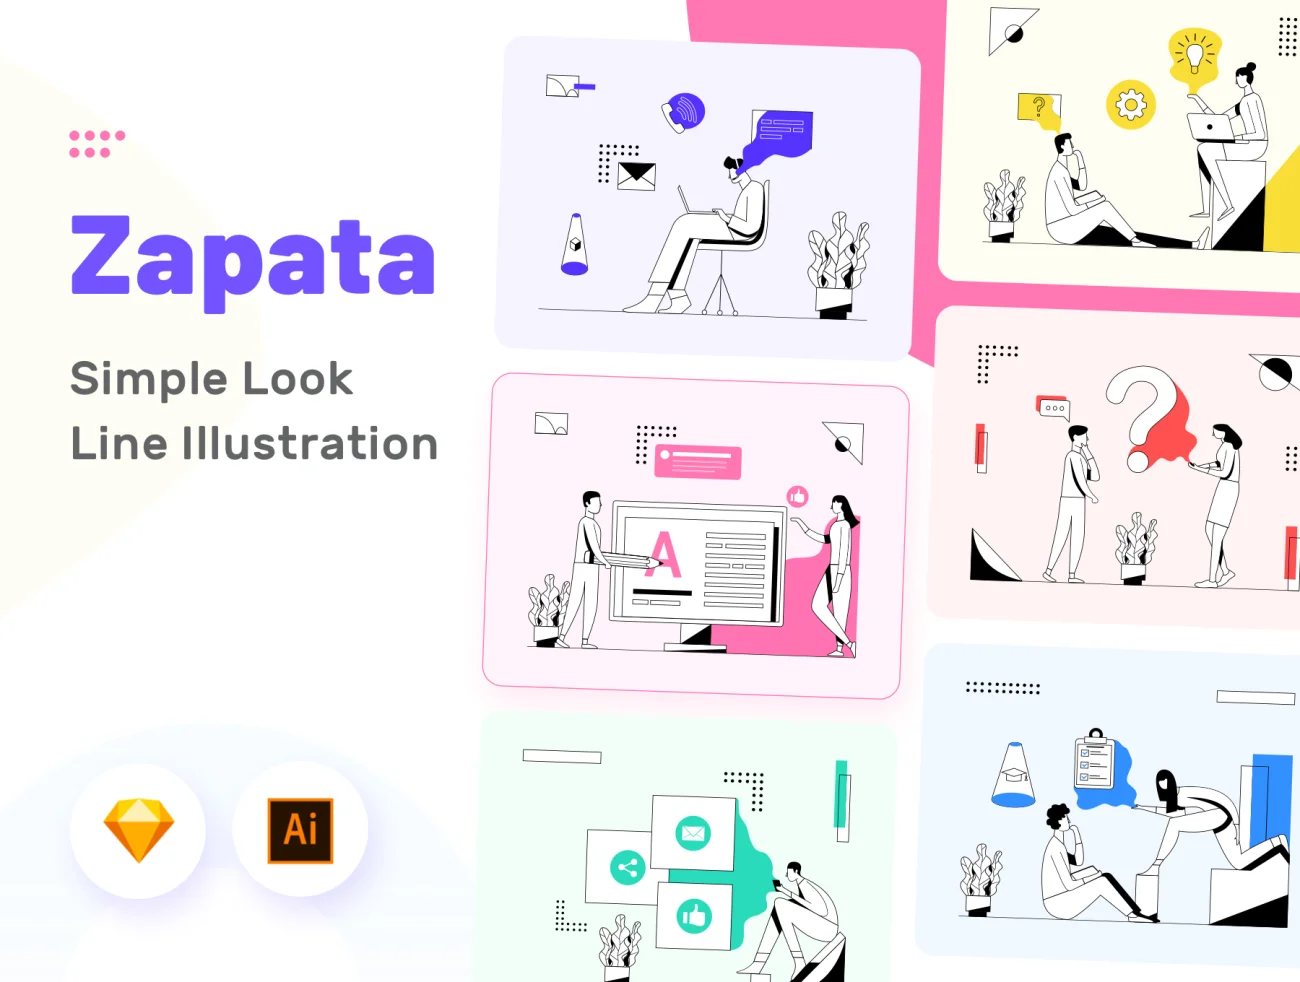 Zapata - Simple Line Illustration 简单简笔画矢量线条插画科技创意工作场景-人物插画、商业金融、学习生活、插画、插画风格、教育医疗、概念创意、电子商务、社交购物、线条手绘、职场办公、营销创业-到位啦UI